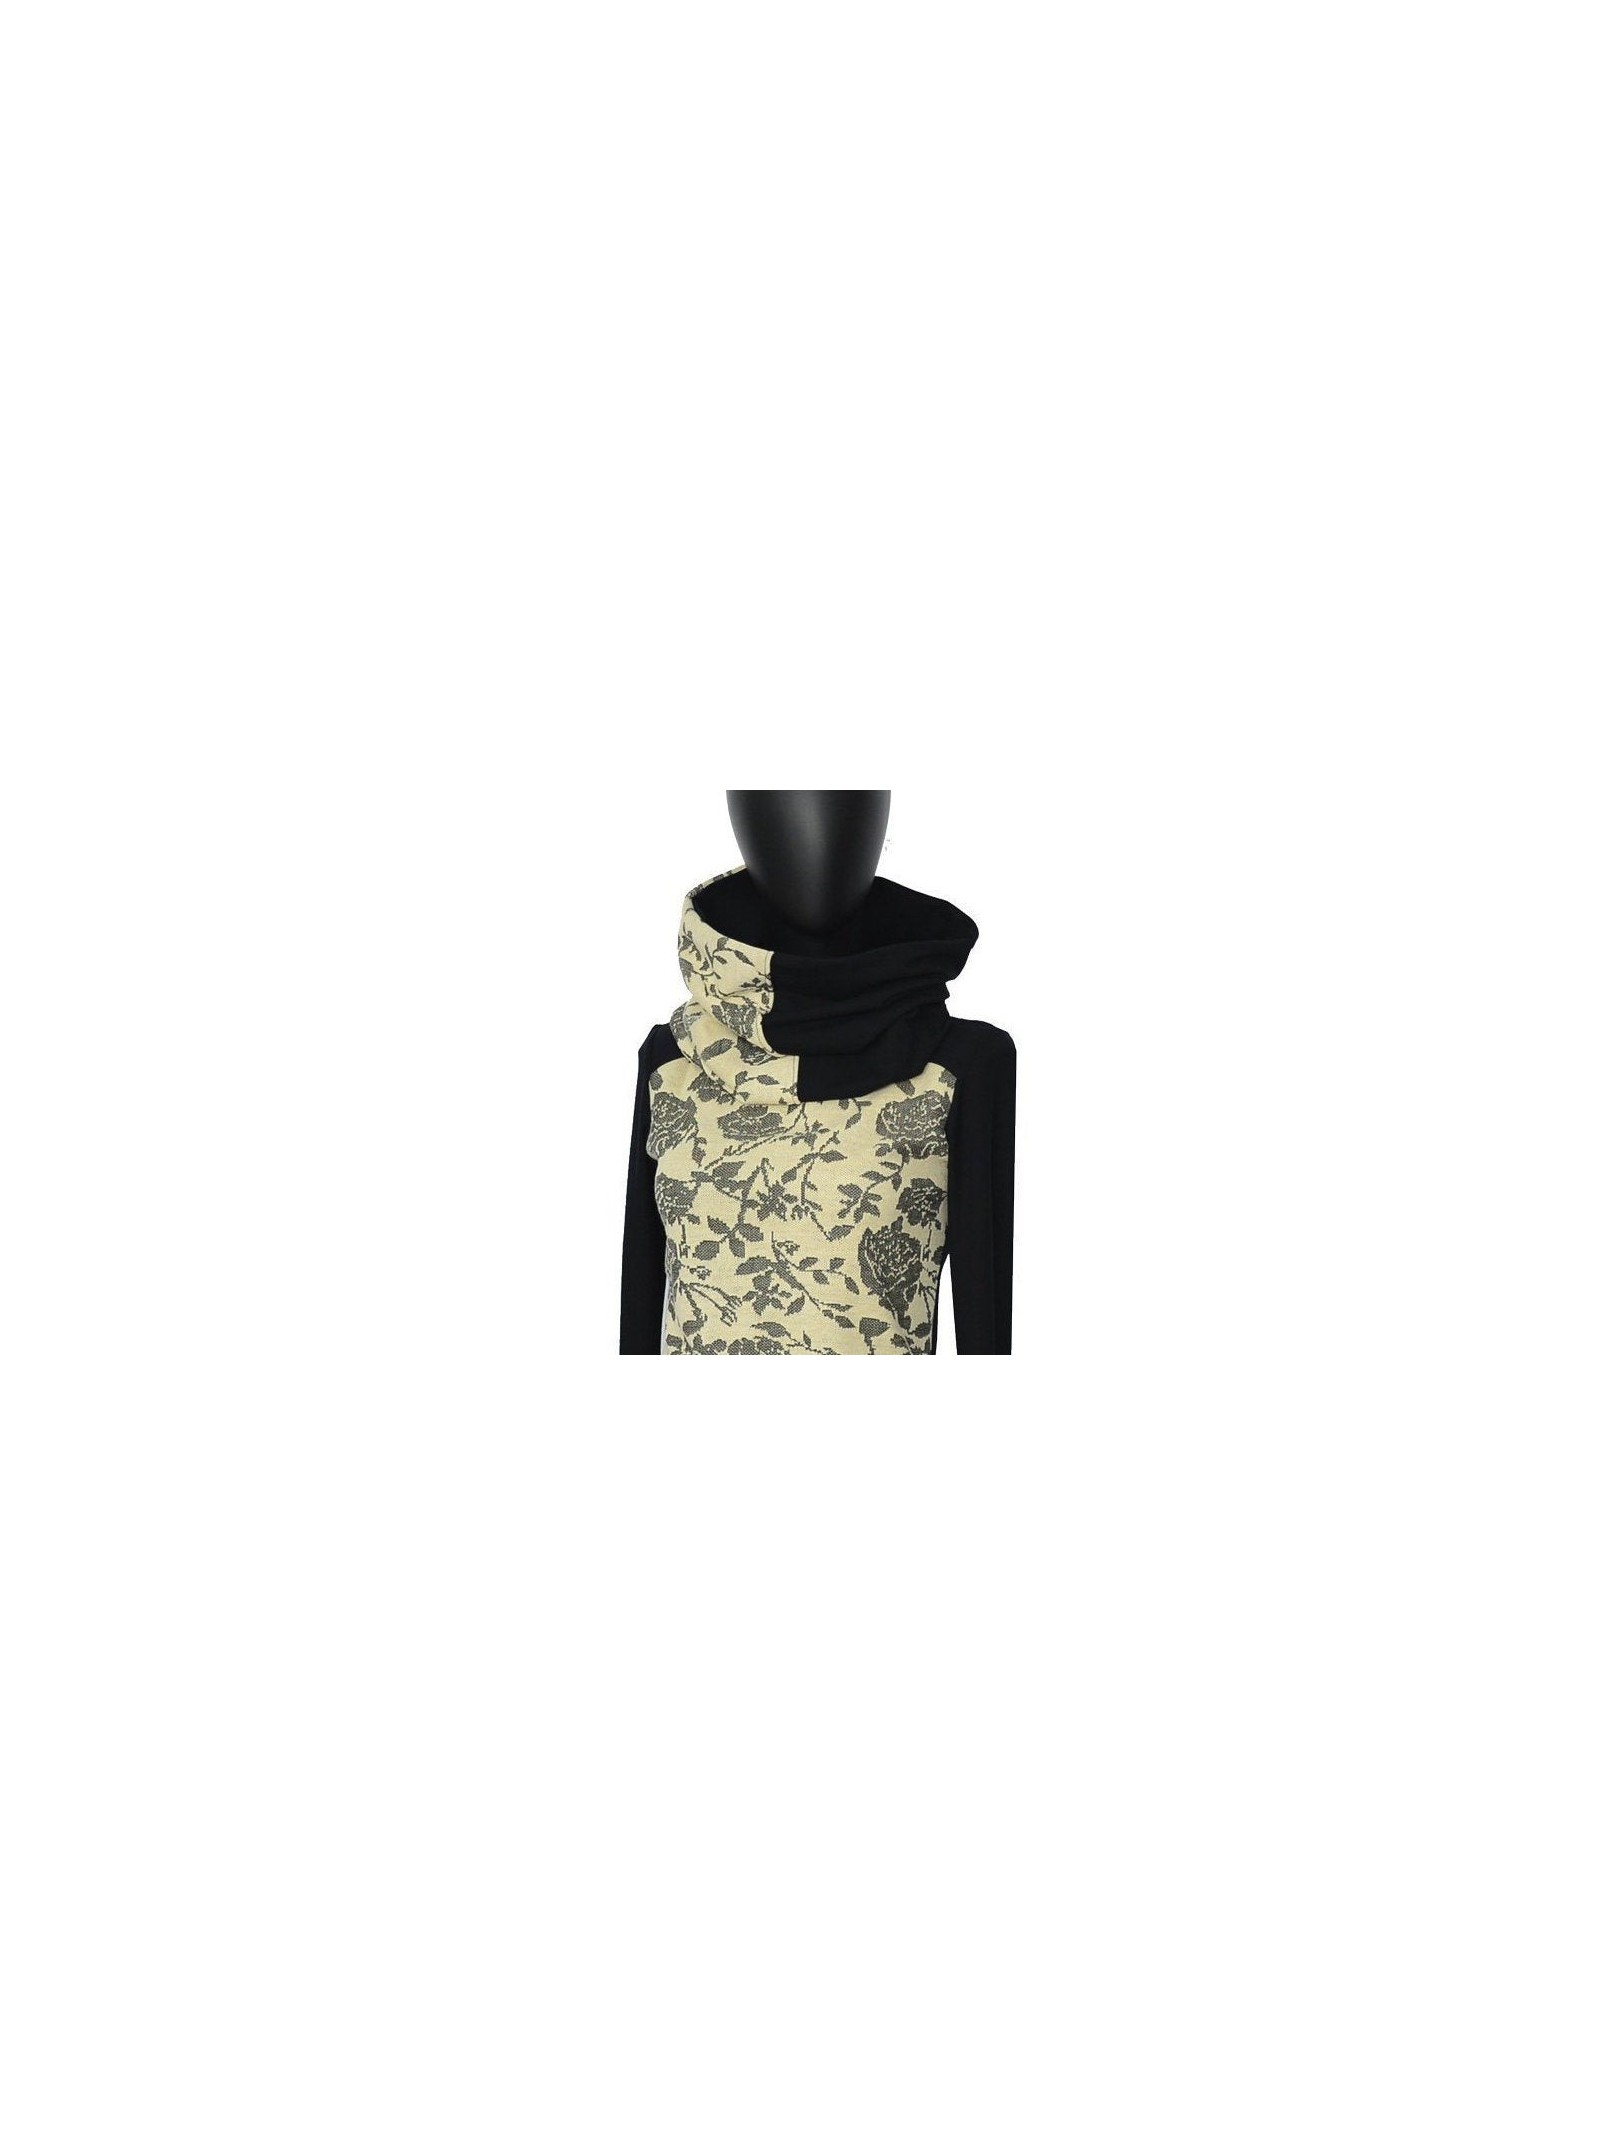 Iza Fabian - Hoodie -BIC12- schwarz blumen sweater creme black flower pullover women